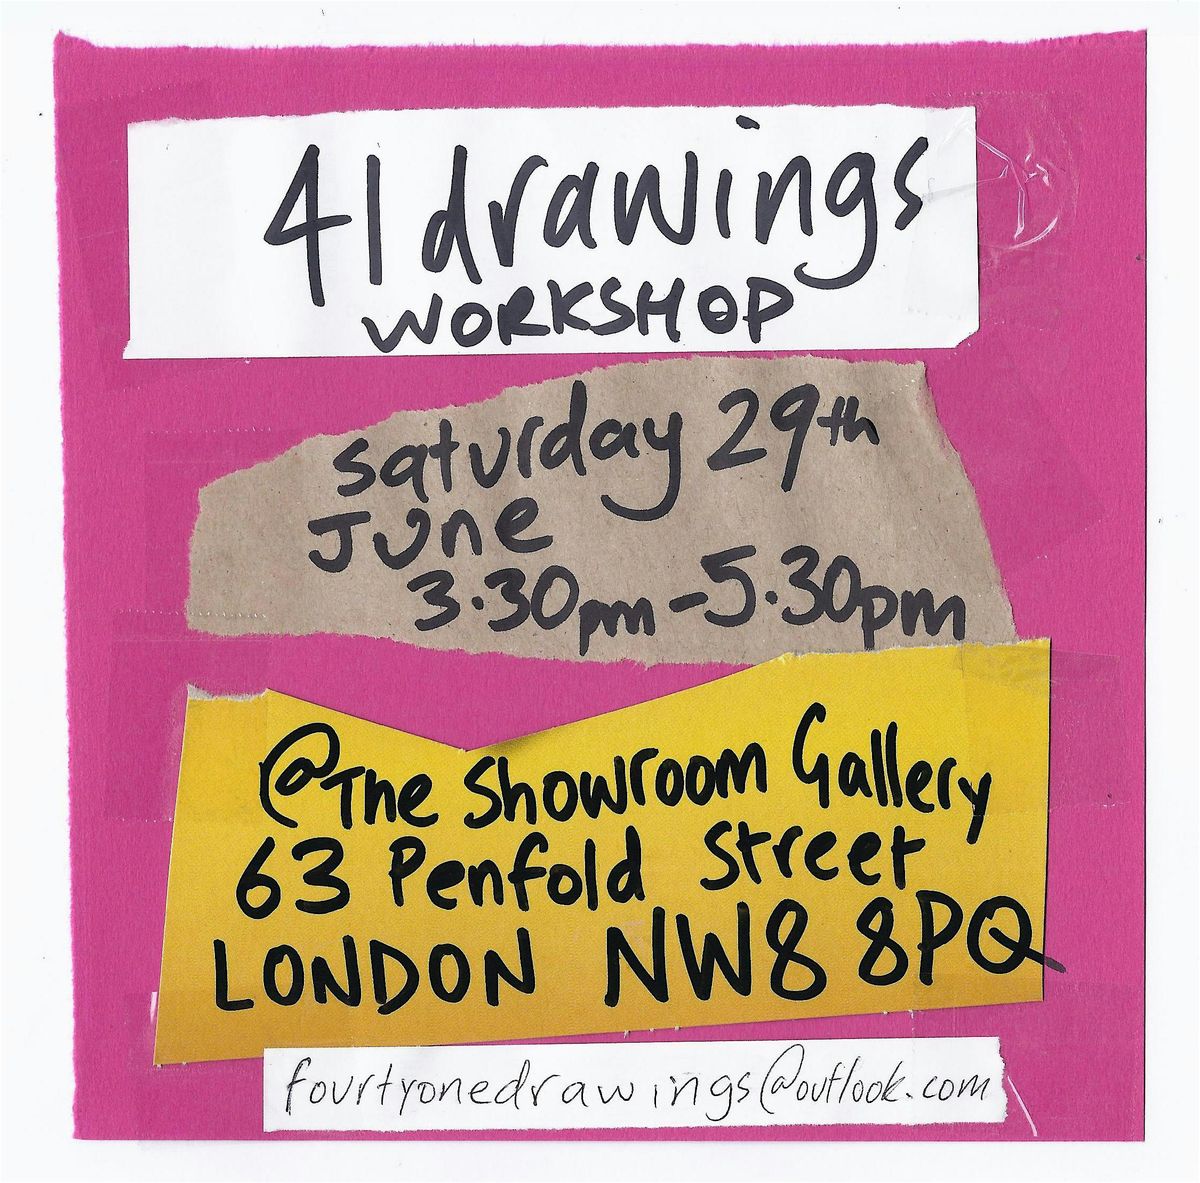 41drawings workshop @ The Showroom Gallery